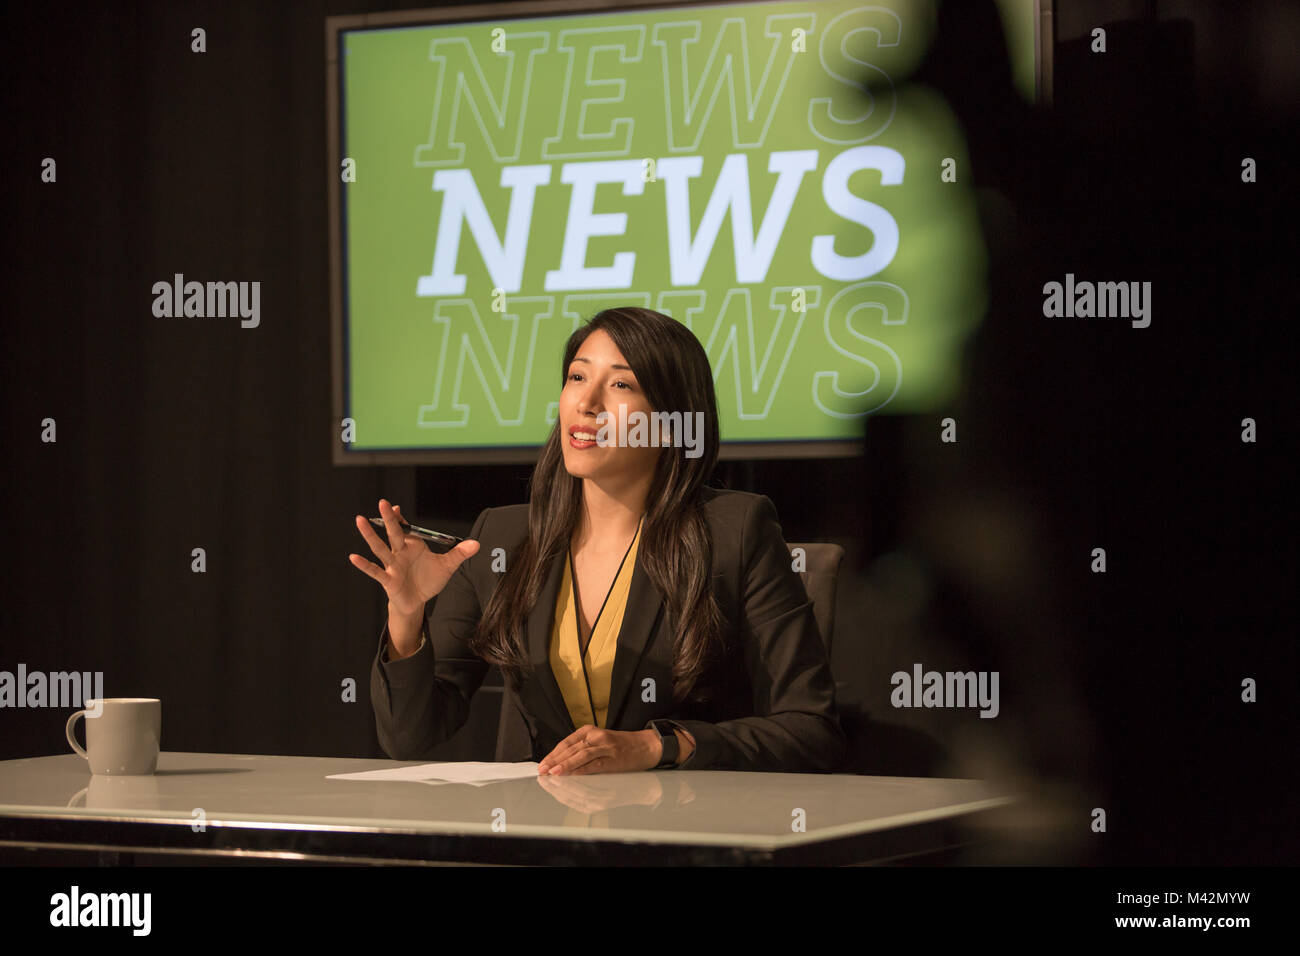 News presenter dans un studio de radiodiffusion de télévision Banque D'Images